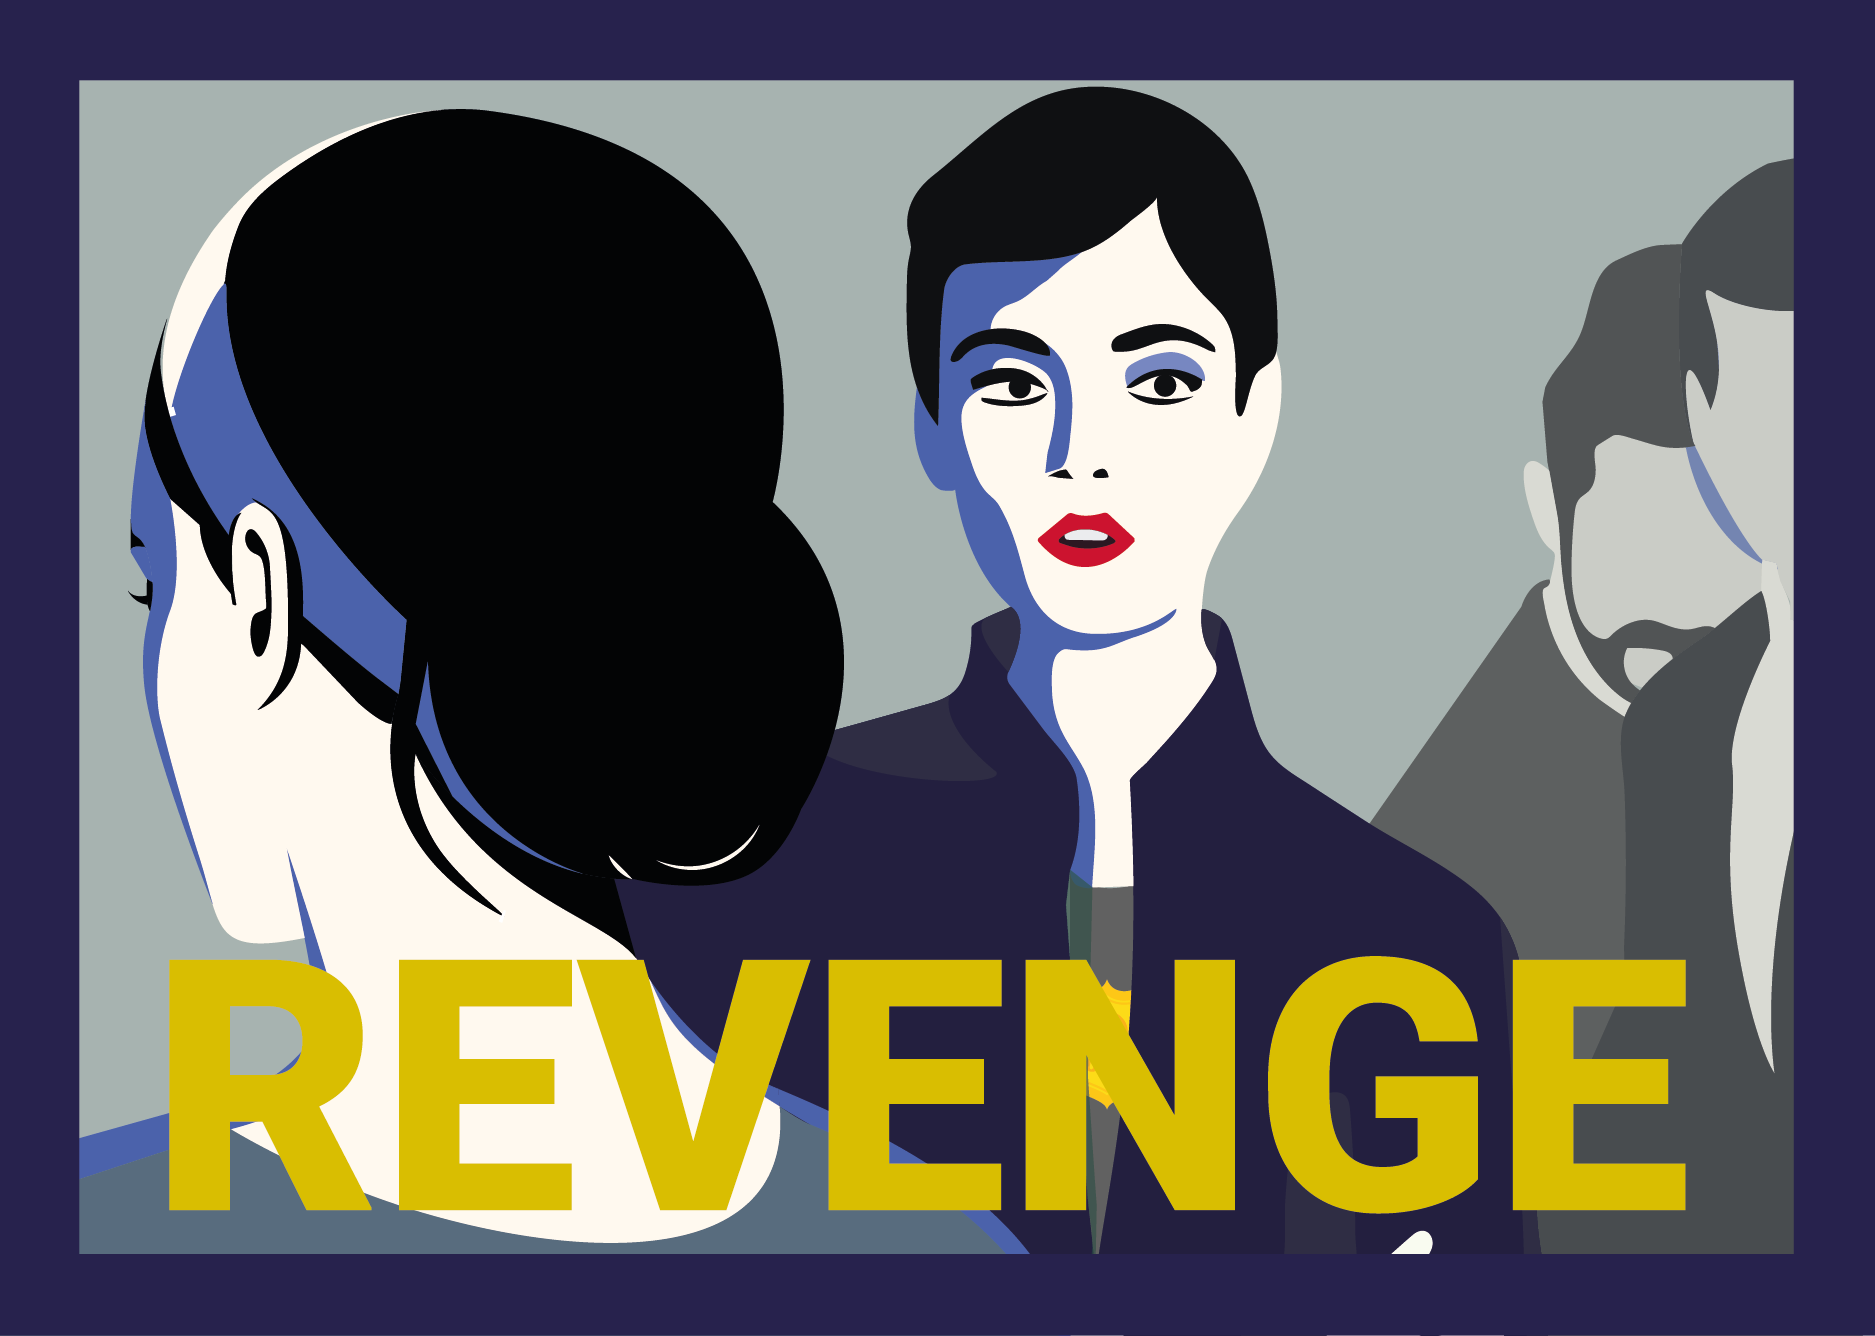 Revenge Podcast Wraak